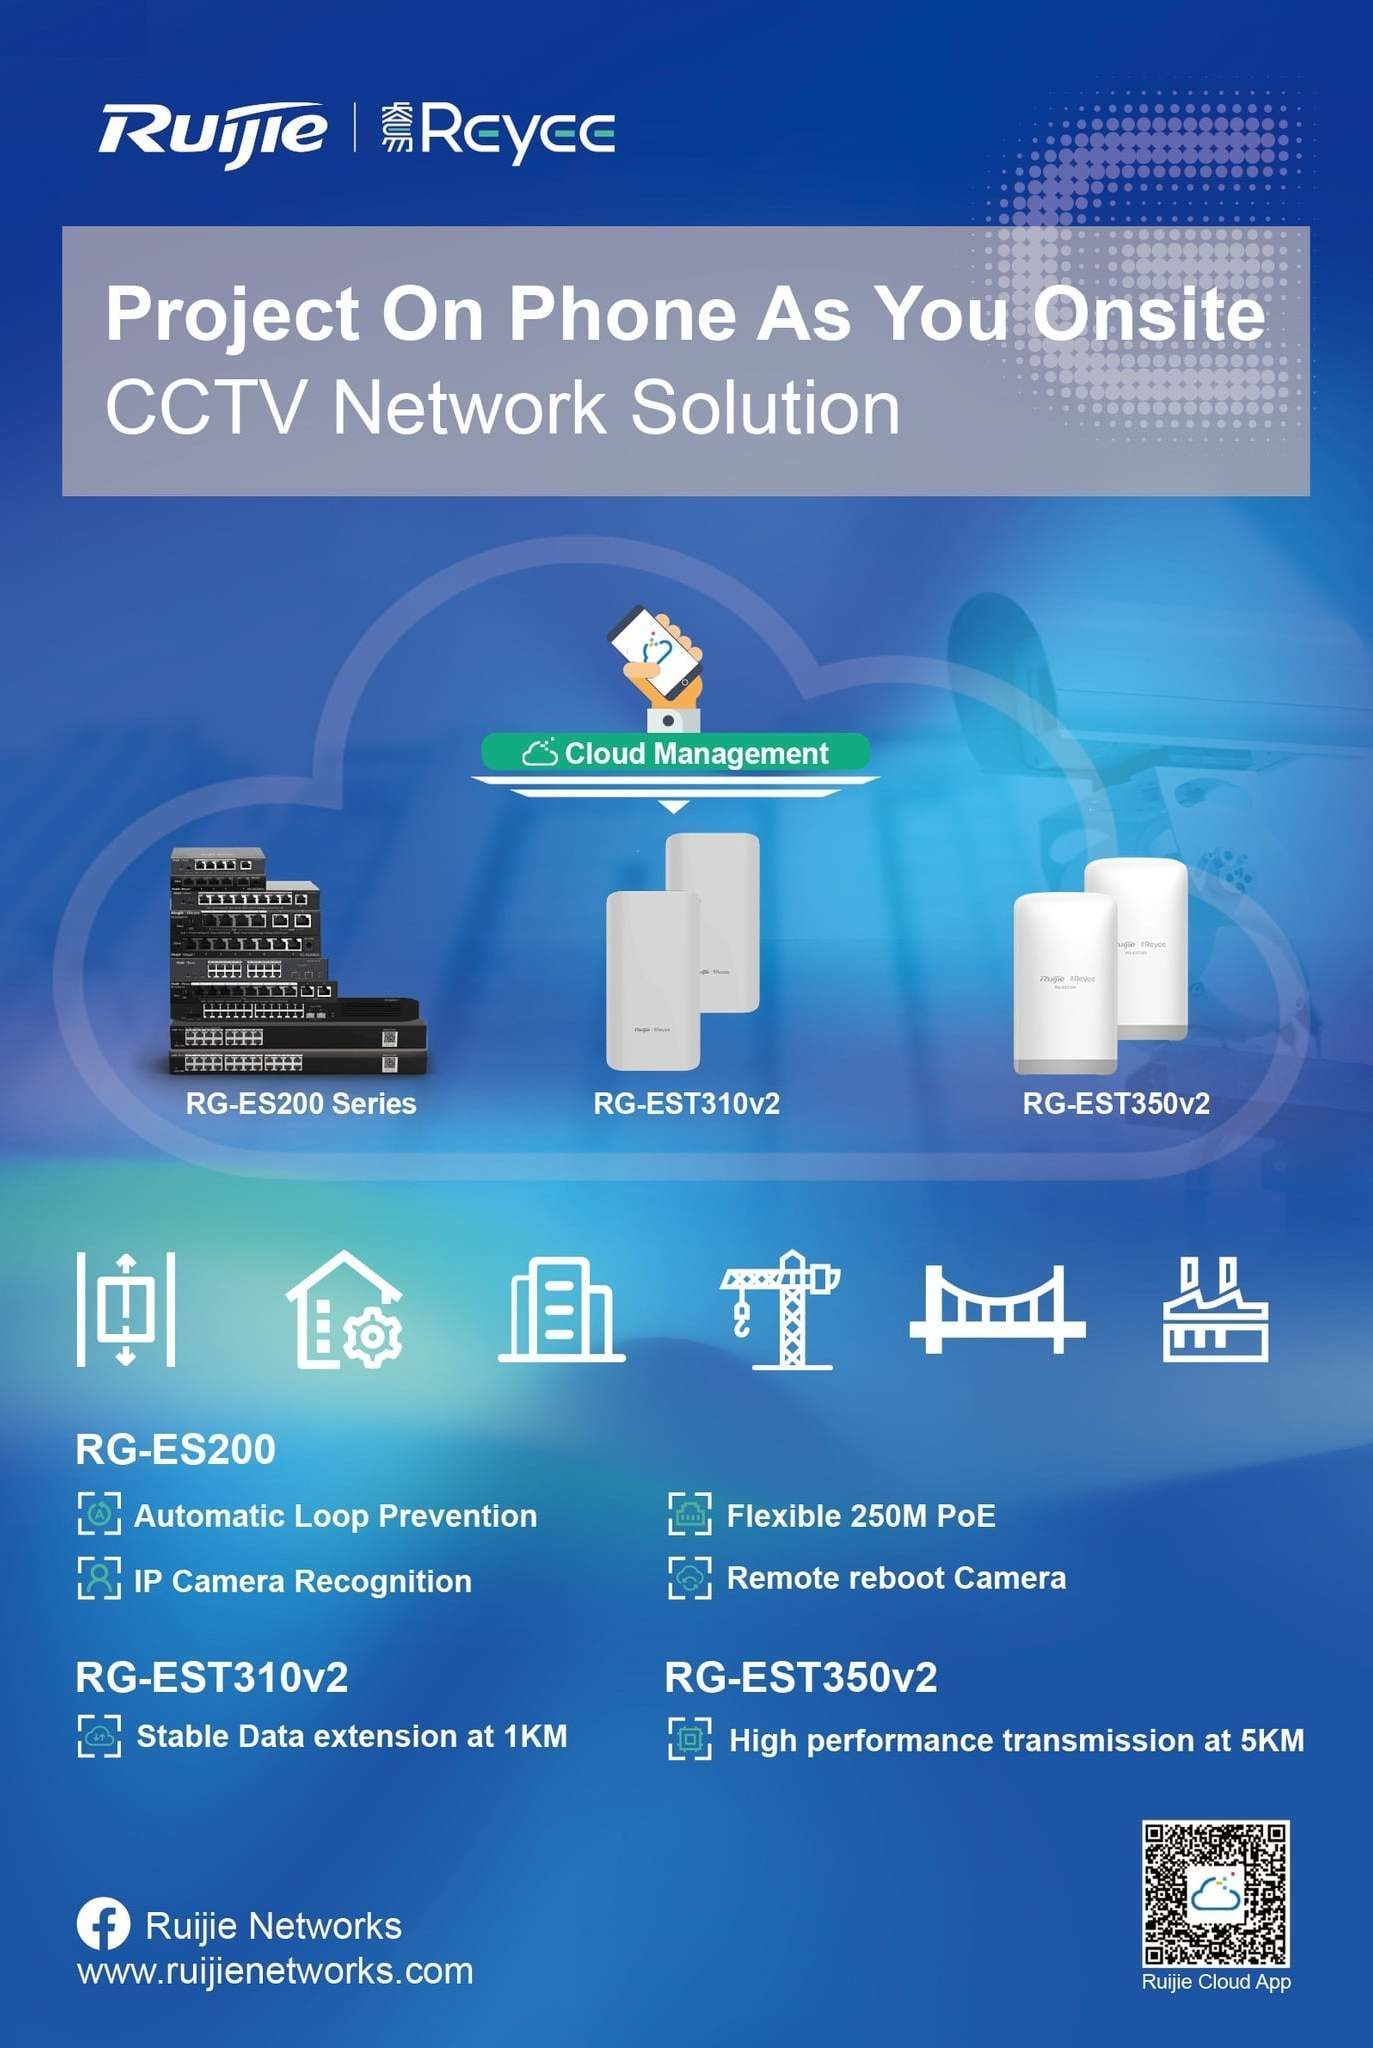 Ruijie Reyee Wireless Network CCTV Solution
PoE Switch, Wireless Bridge PTP/PtMP